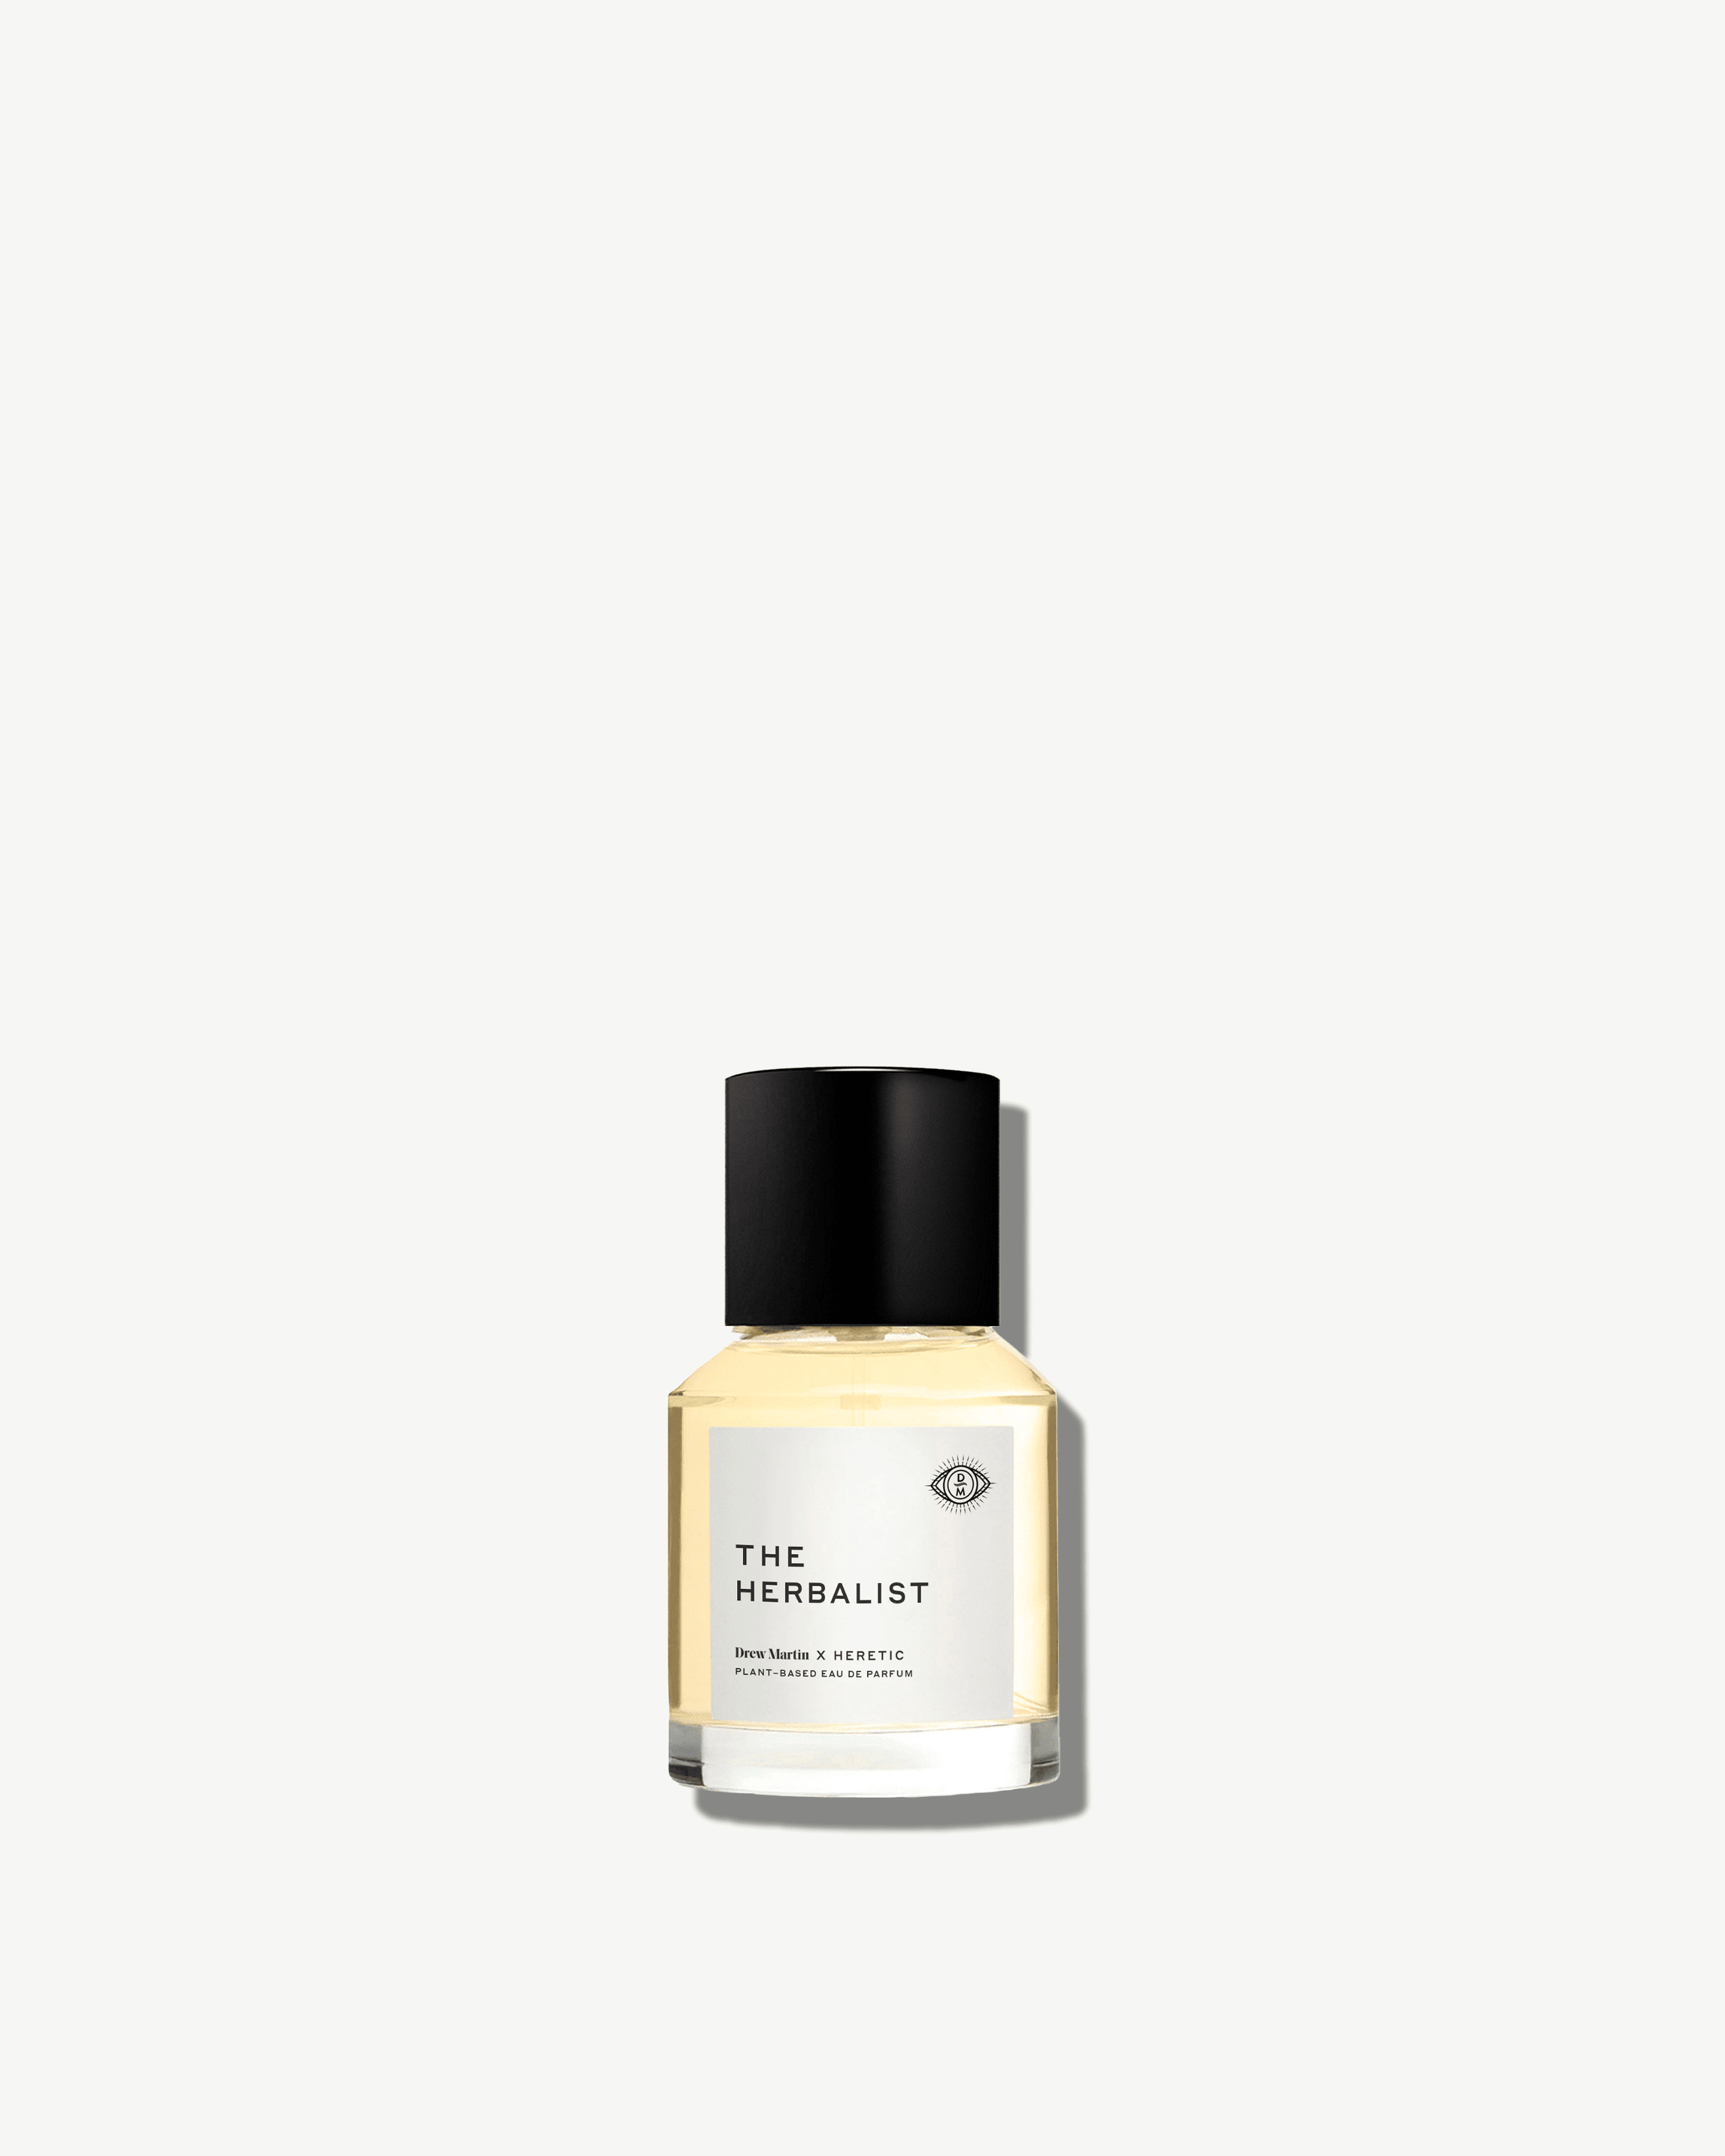 The Herbalist Perfume Oil